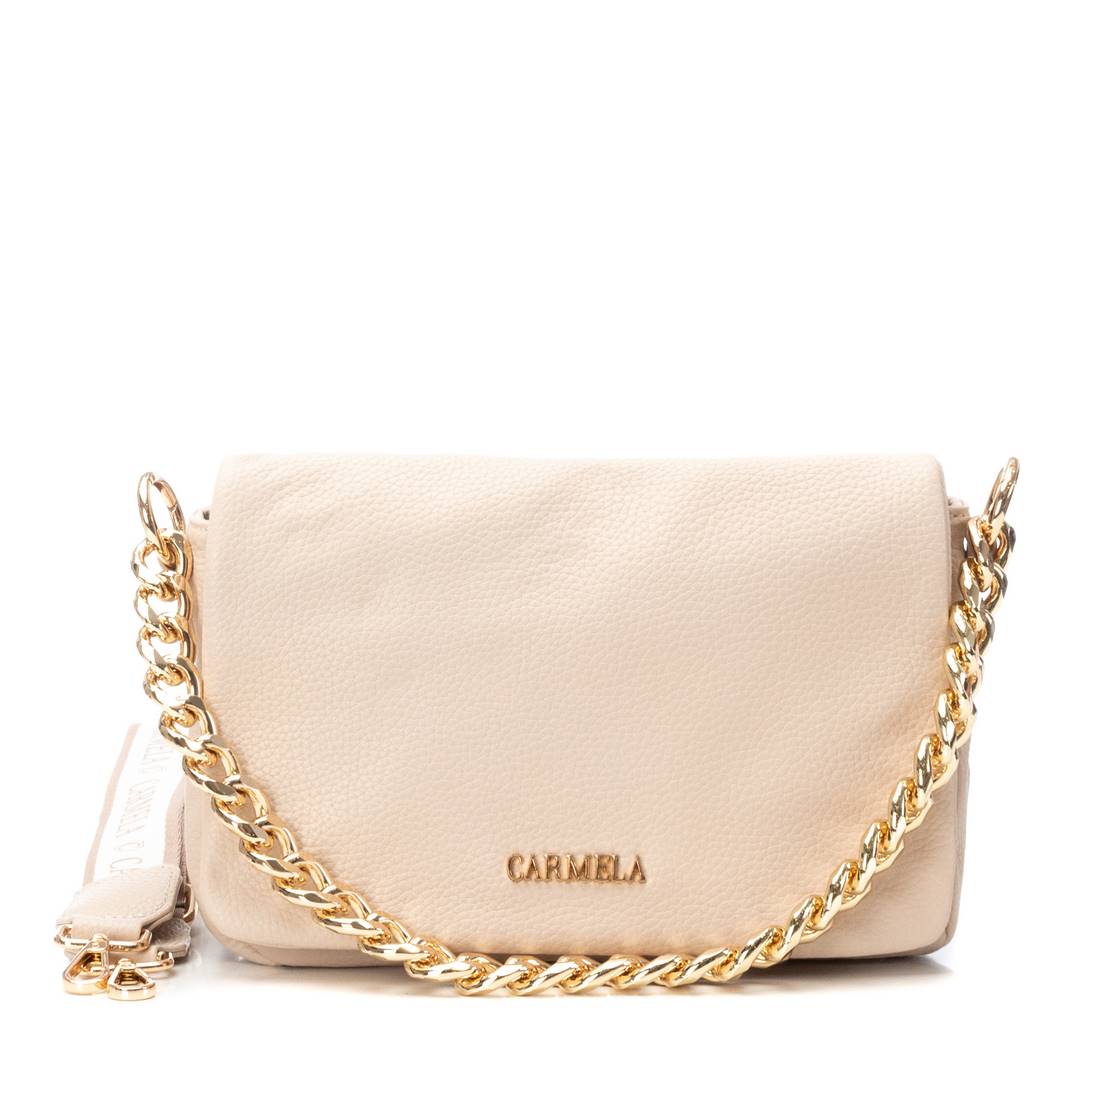 CARMELA WOMEN'S BAG 18609203